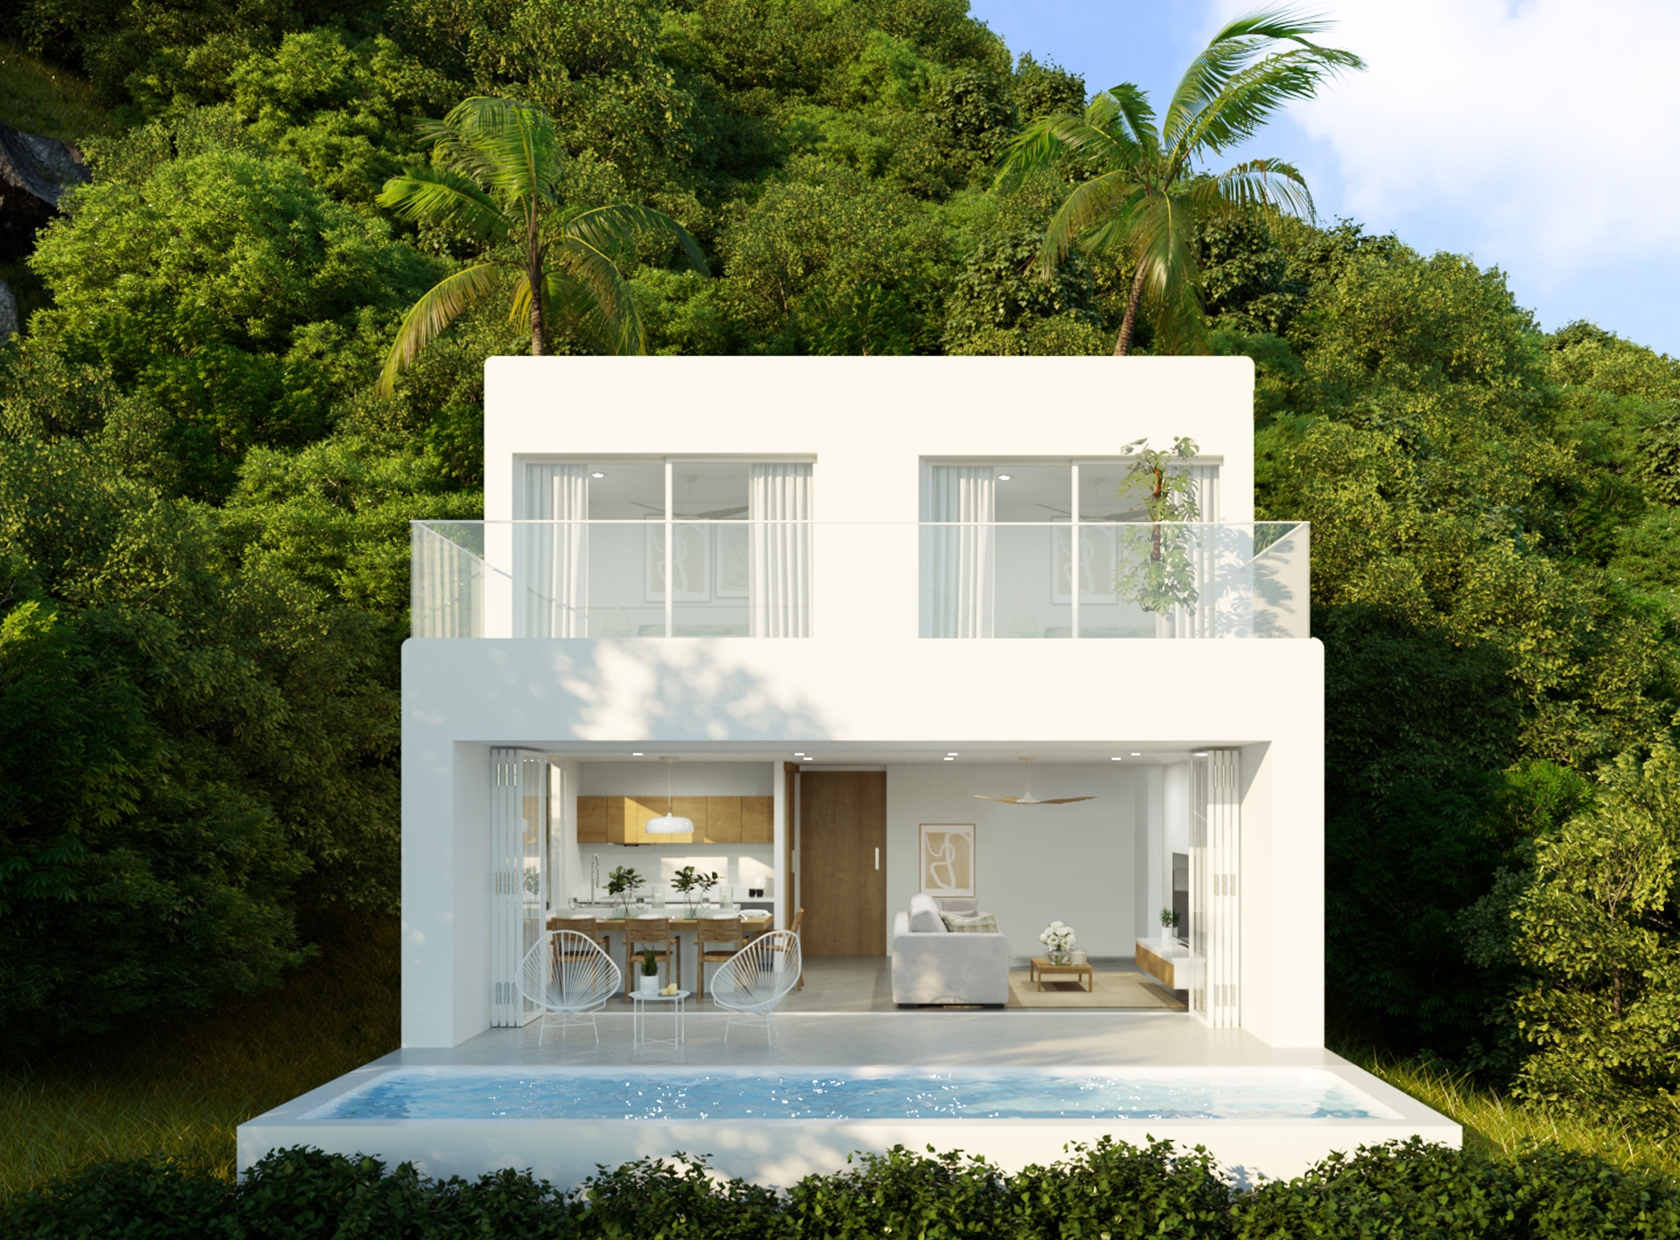 coral cove exterior 2 bedroom villa for sale in koh samui